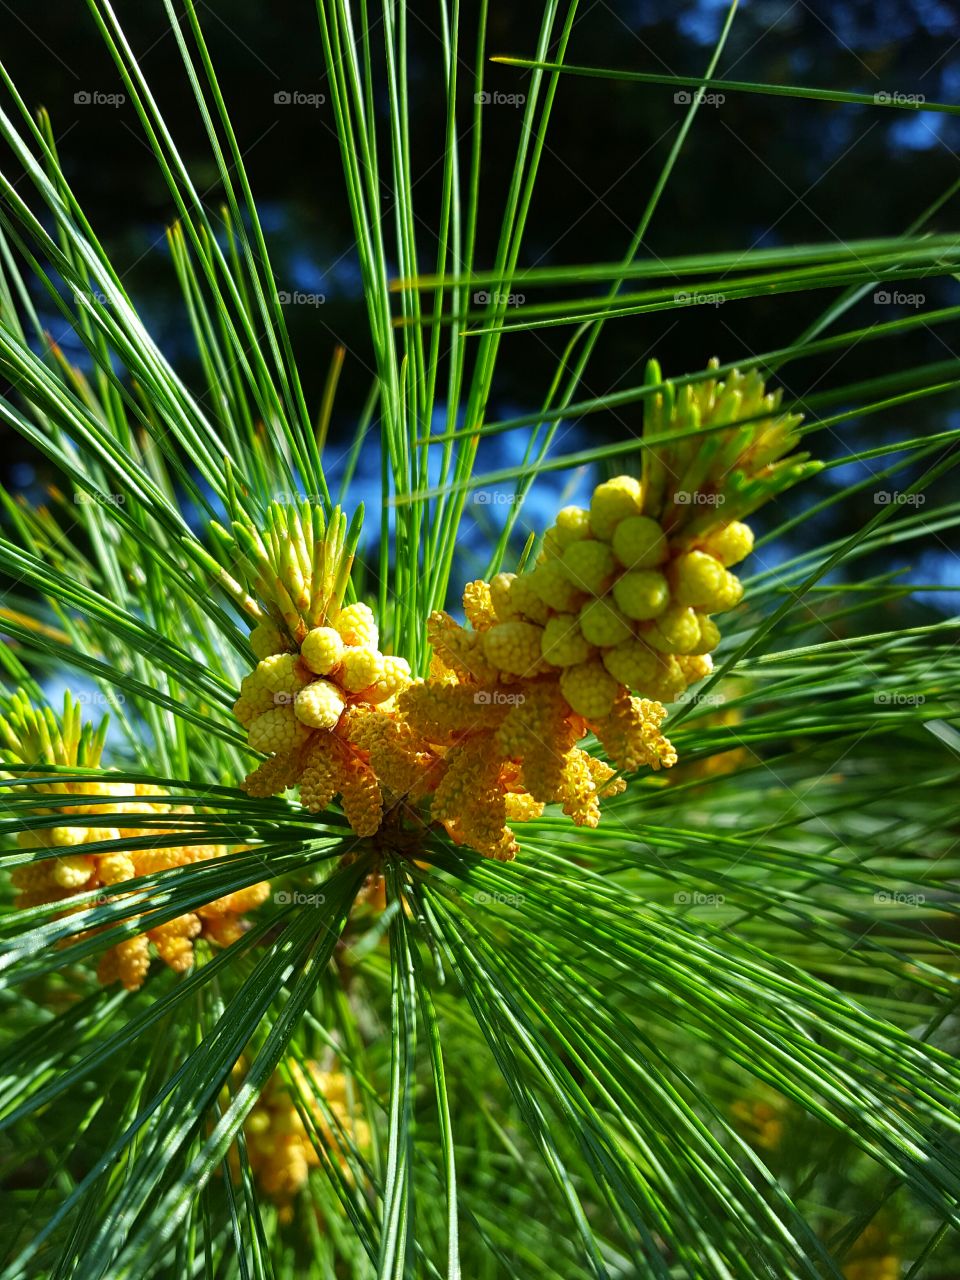 pine tree in bloom